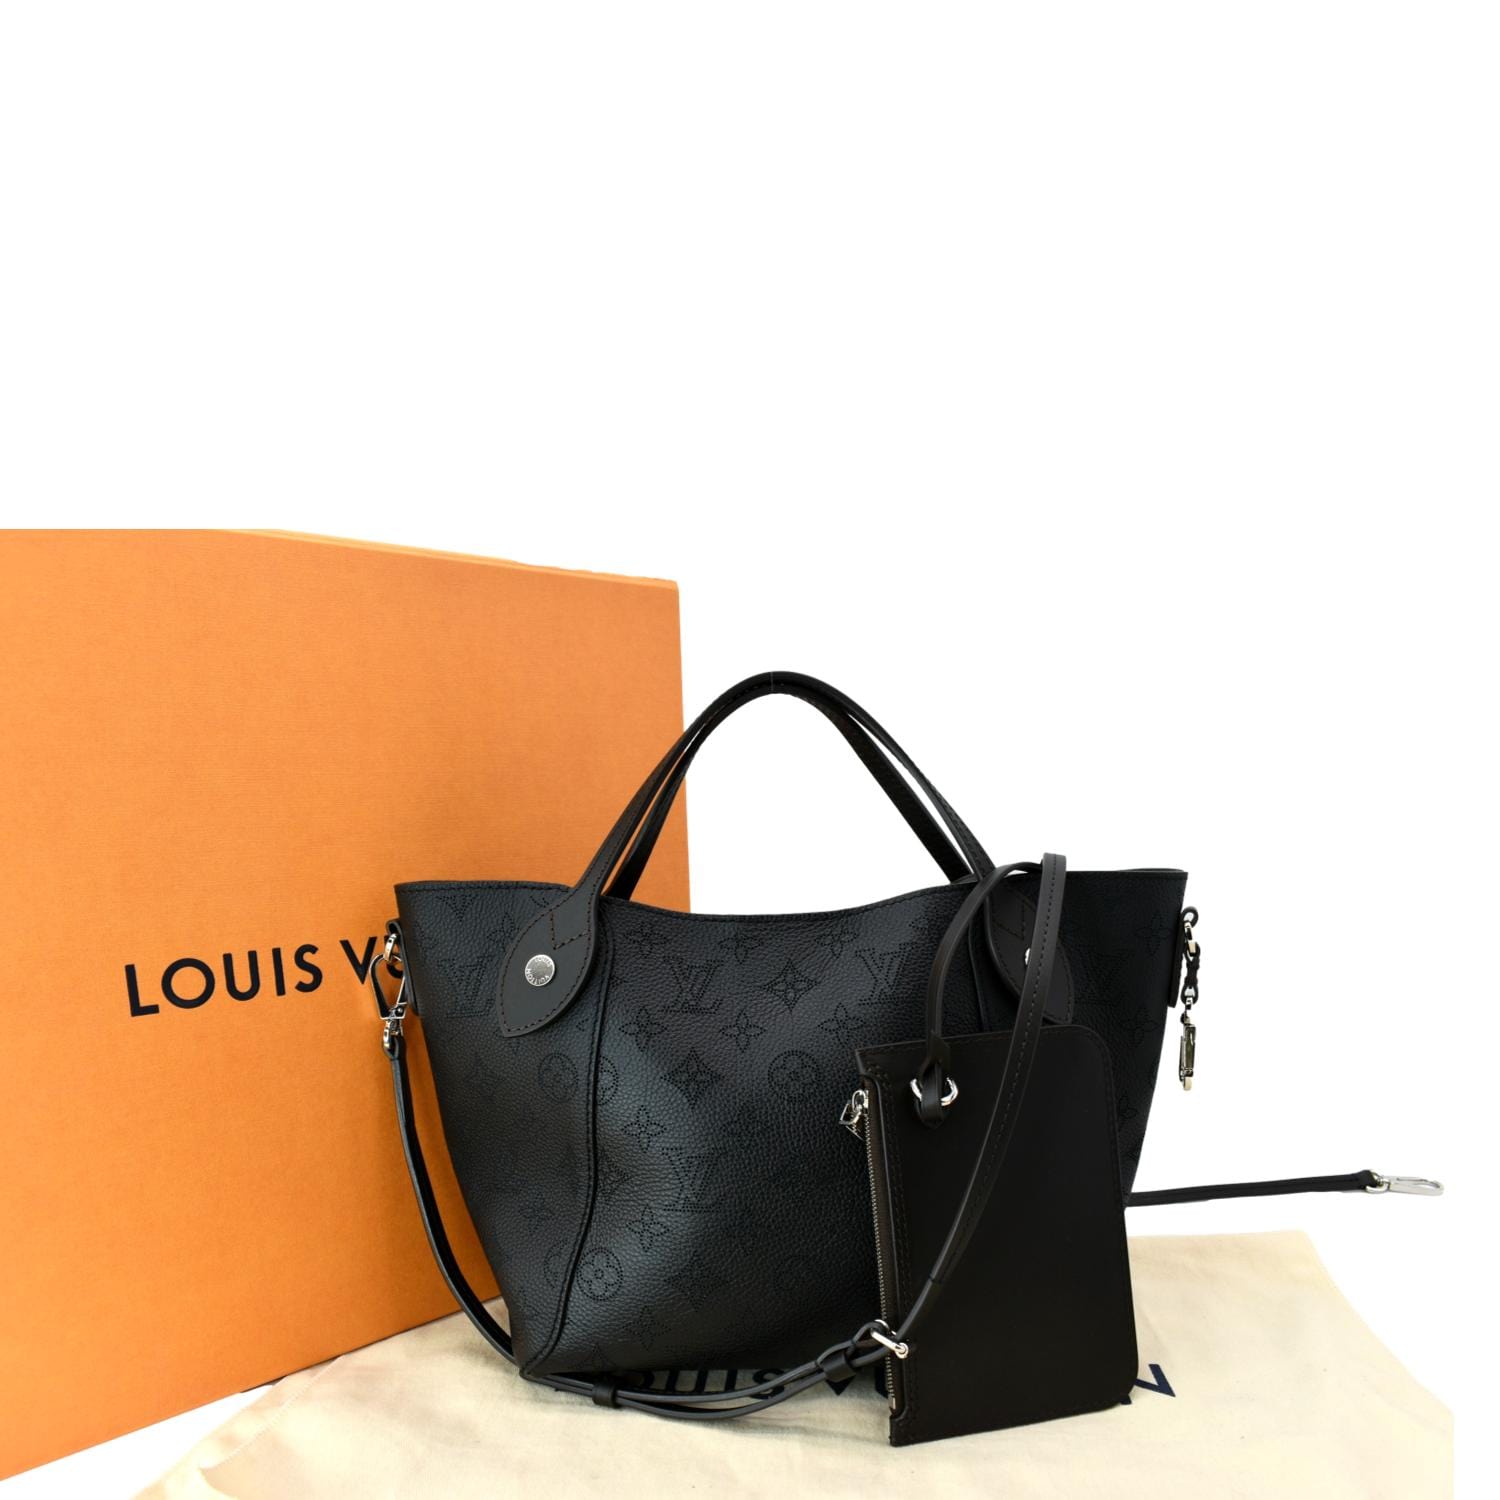 louis vuitton black leather purse